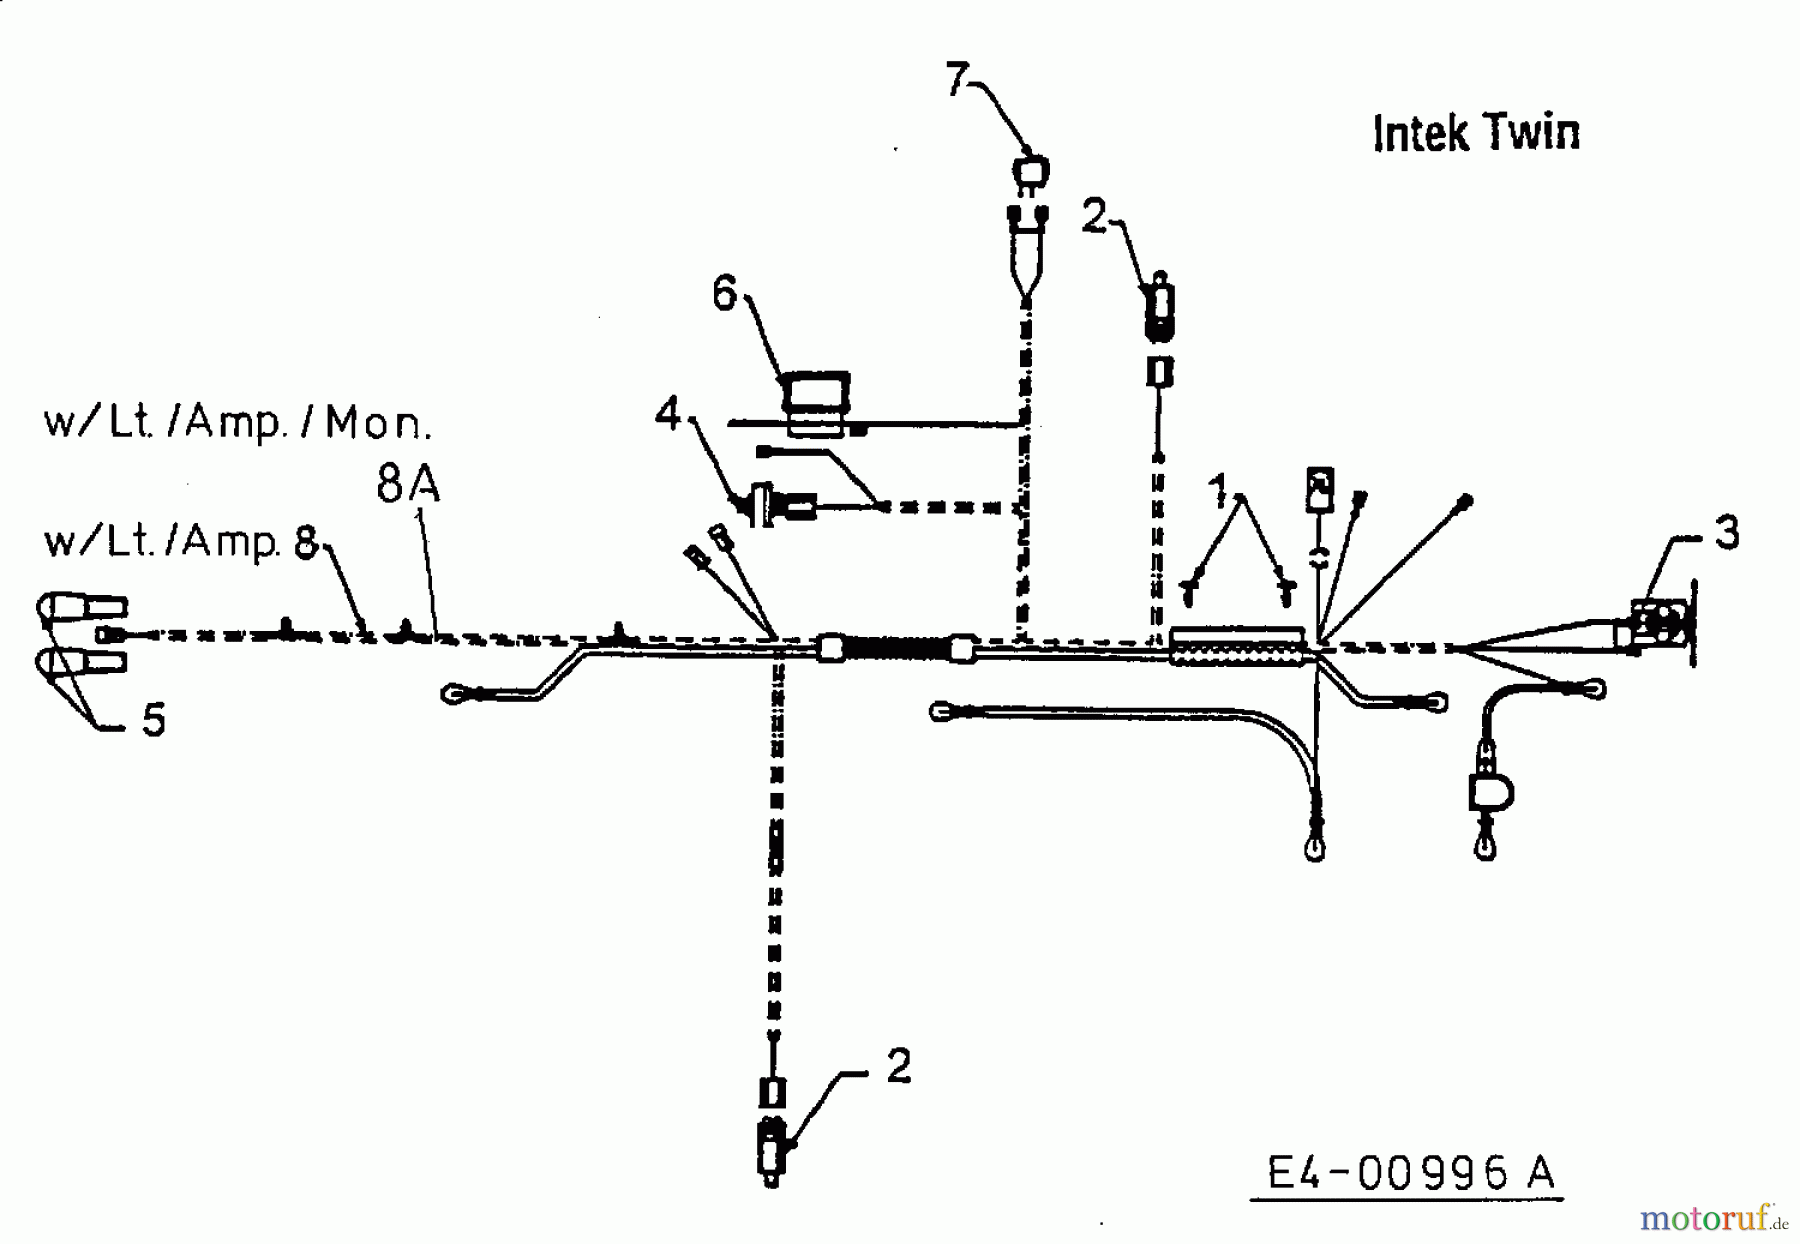  MTD Tracteurs de pelouse H 160 13AF695G678  (1998) Plan électrique  Intek Twin